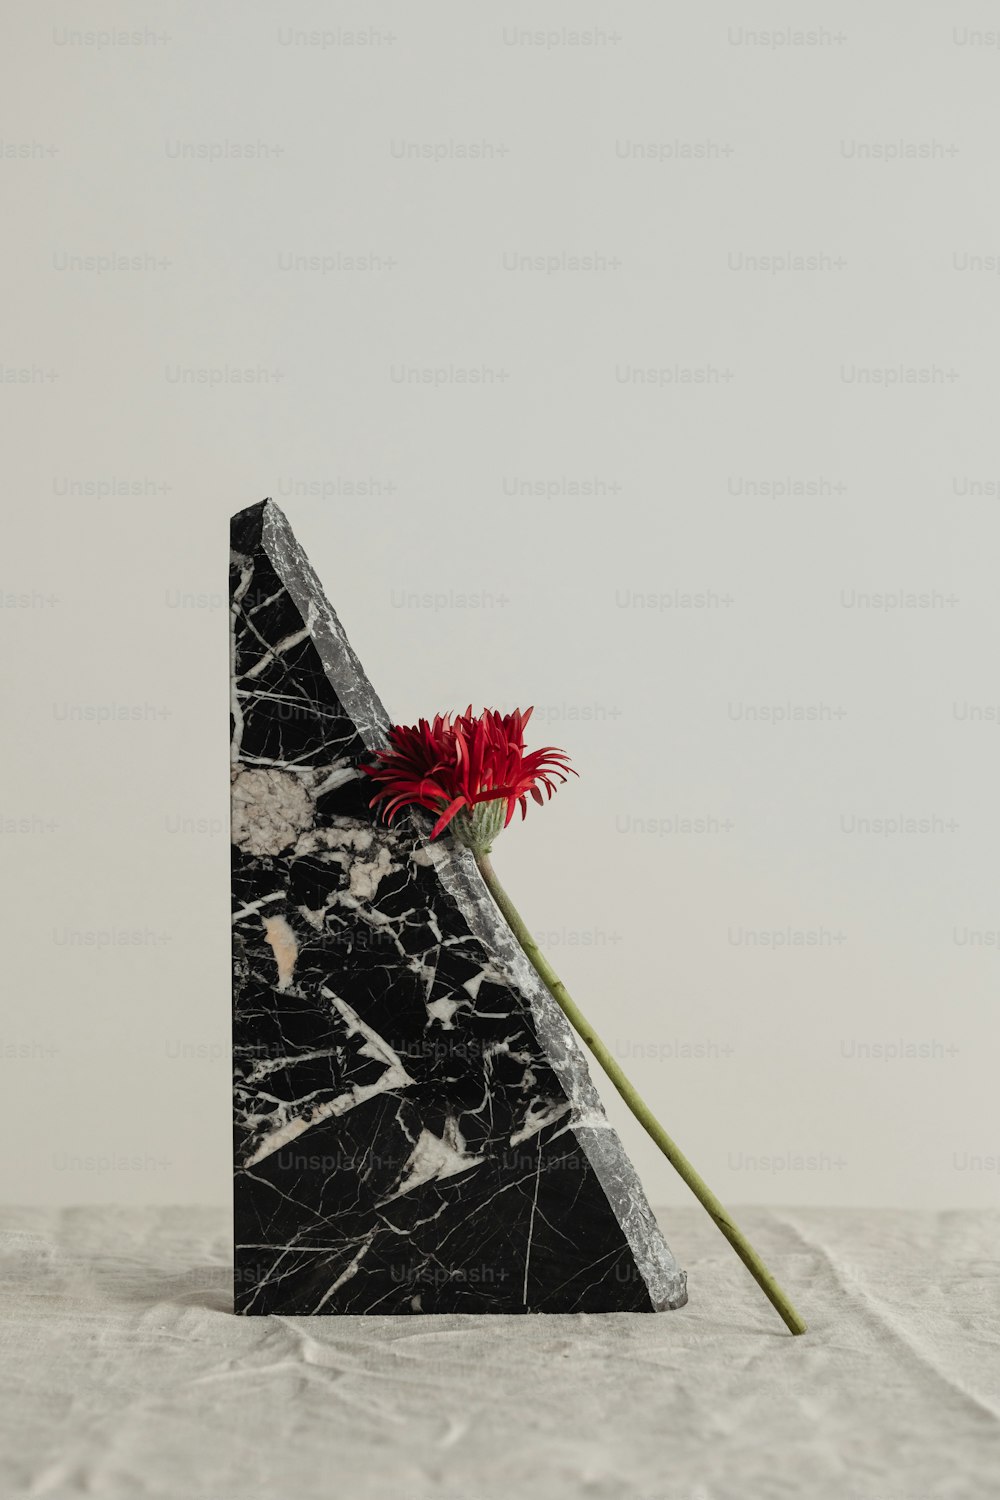 Une œuvre d’art en noir et blanc avec une fleur rouge dedans